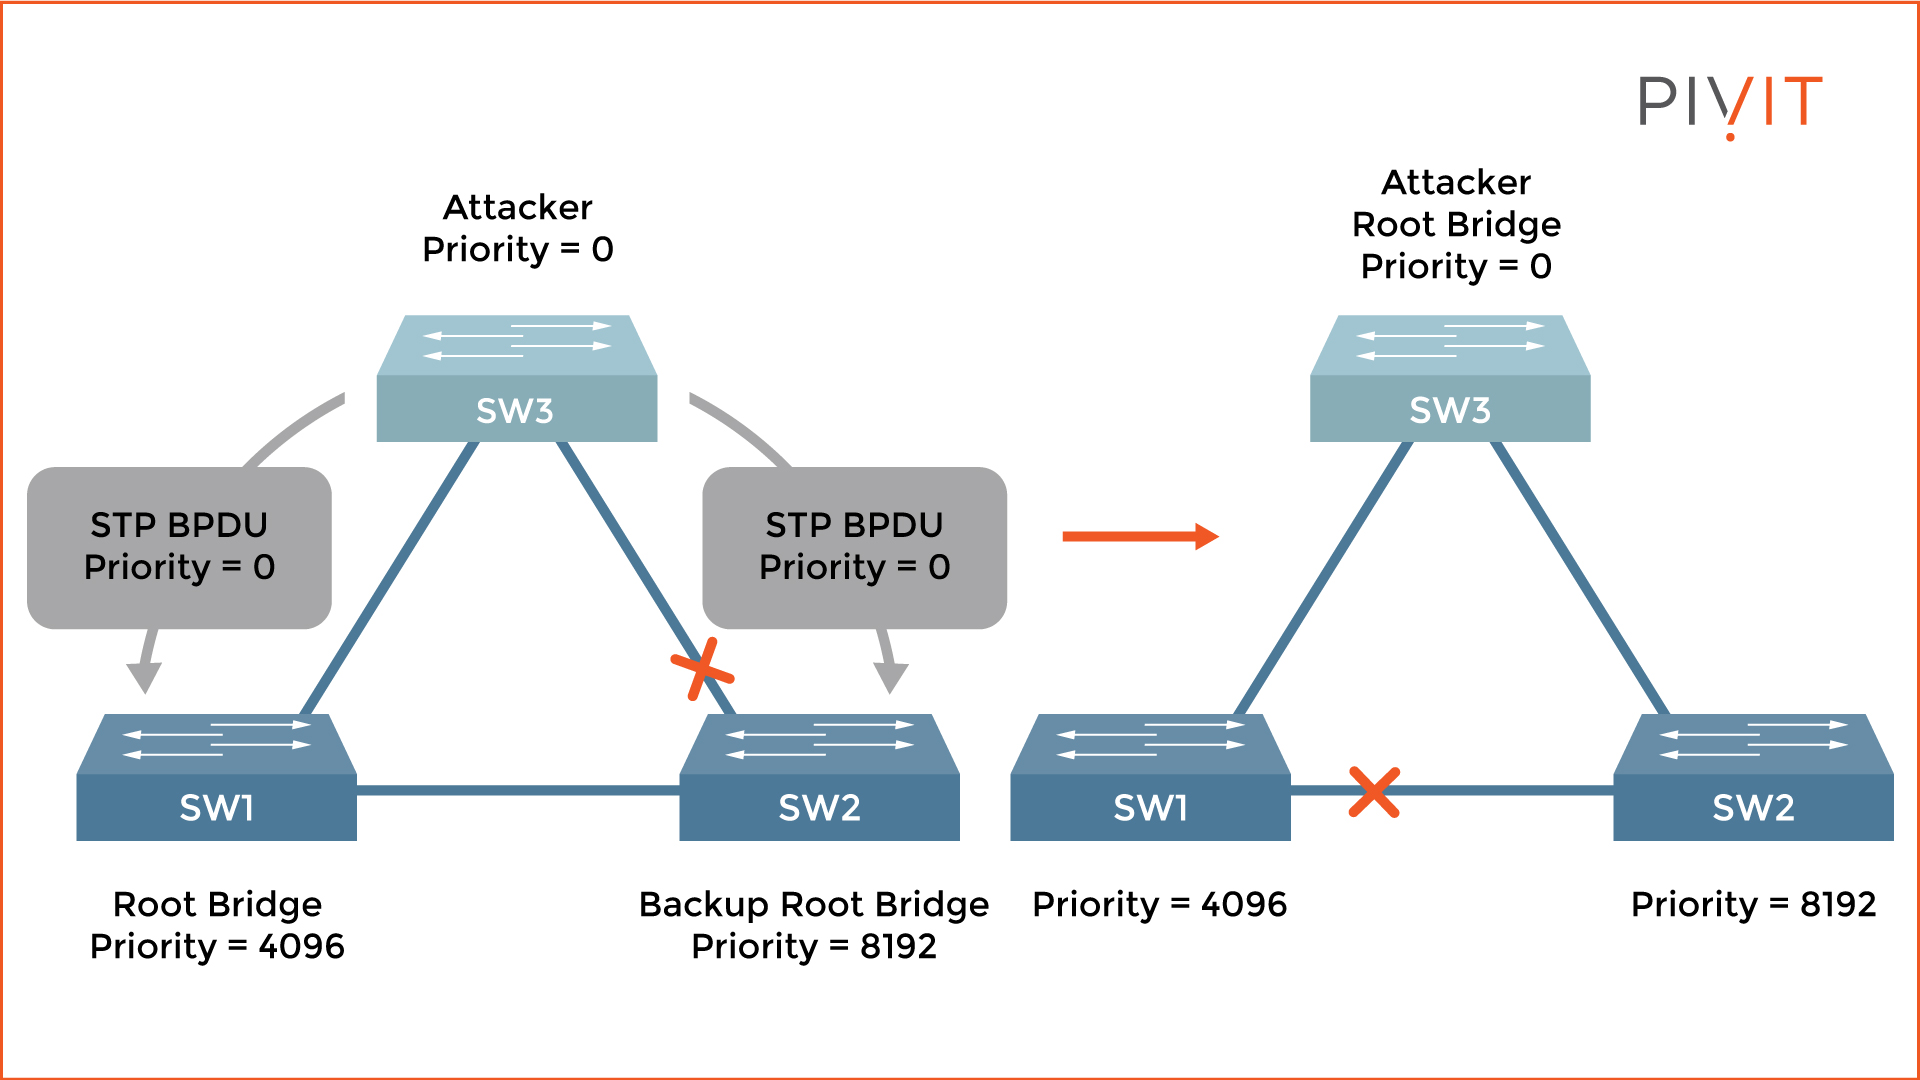 Root bridge change when an attacker starts sending superior BPDU packets